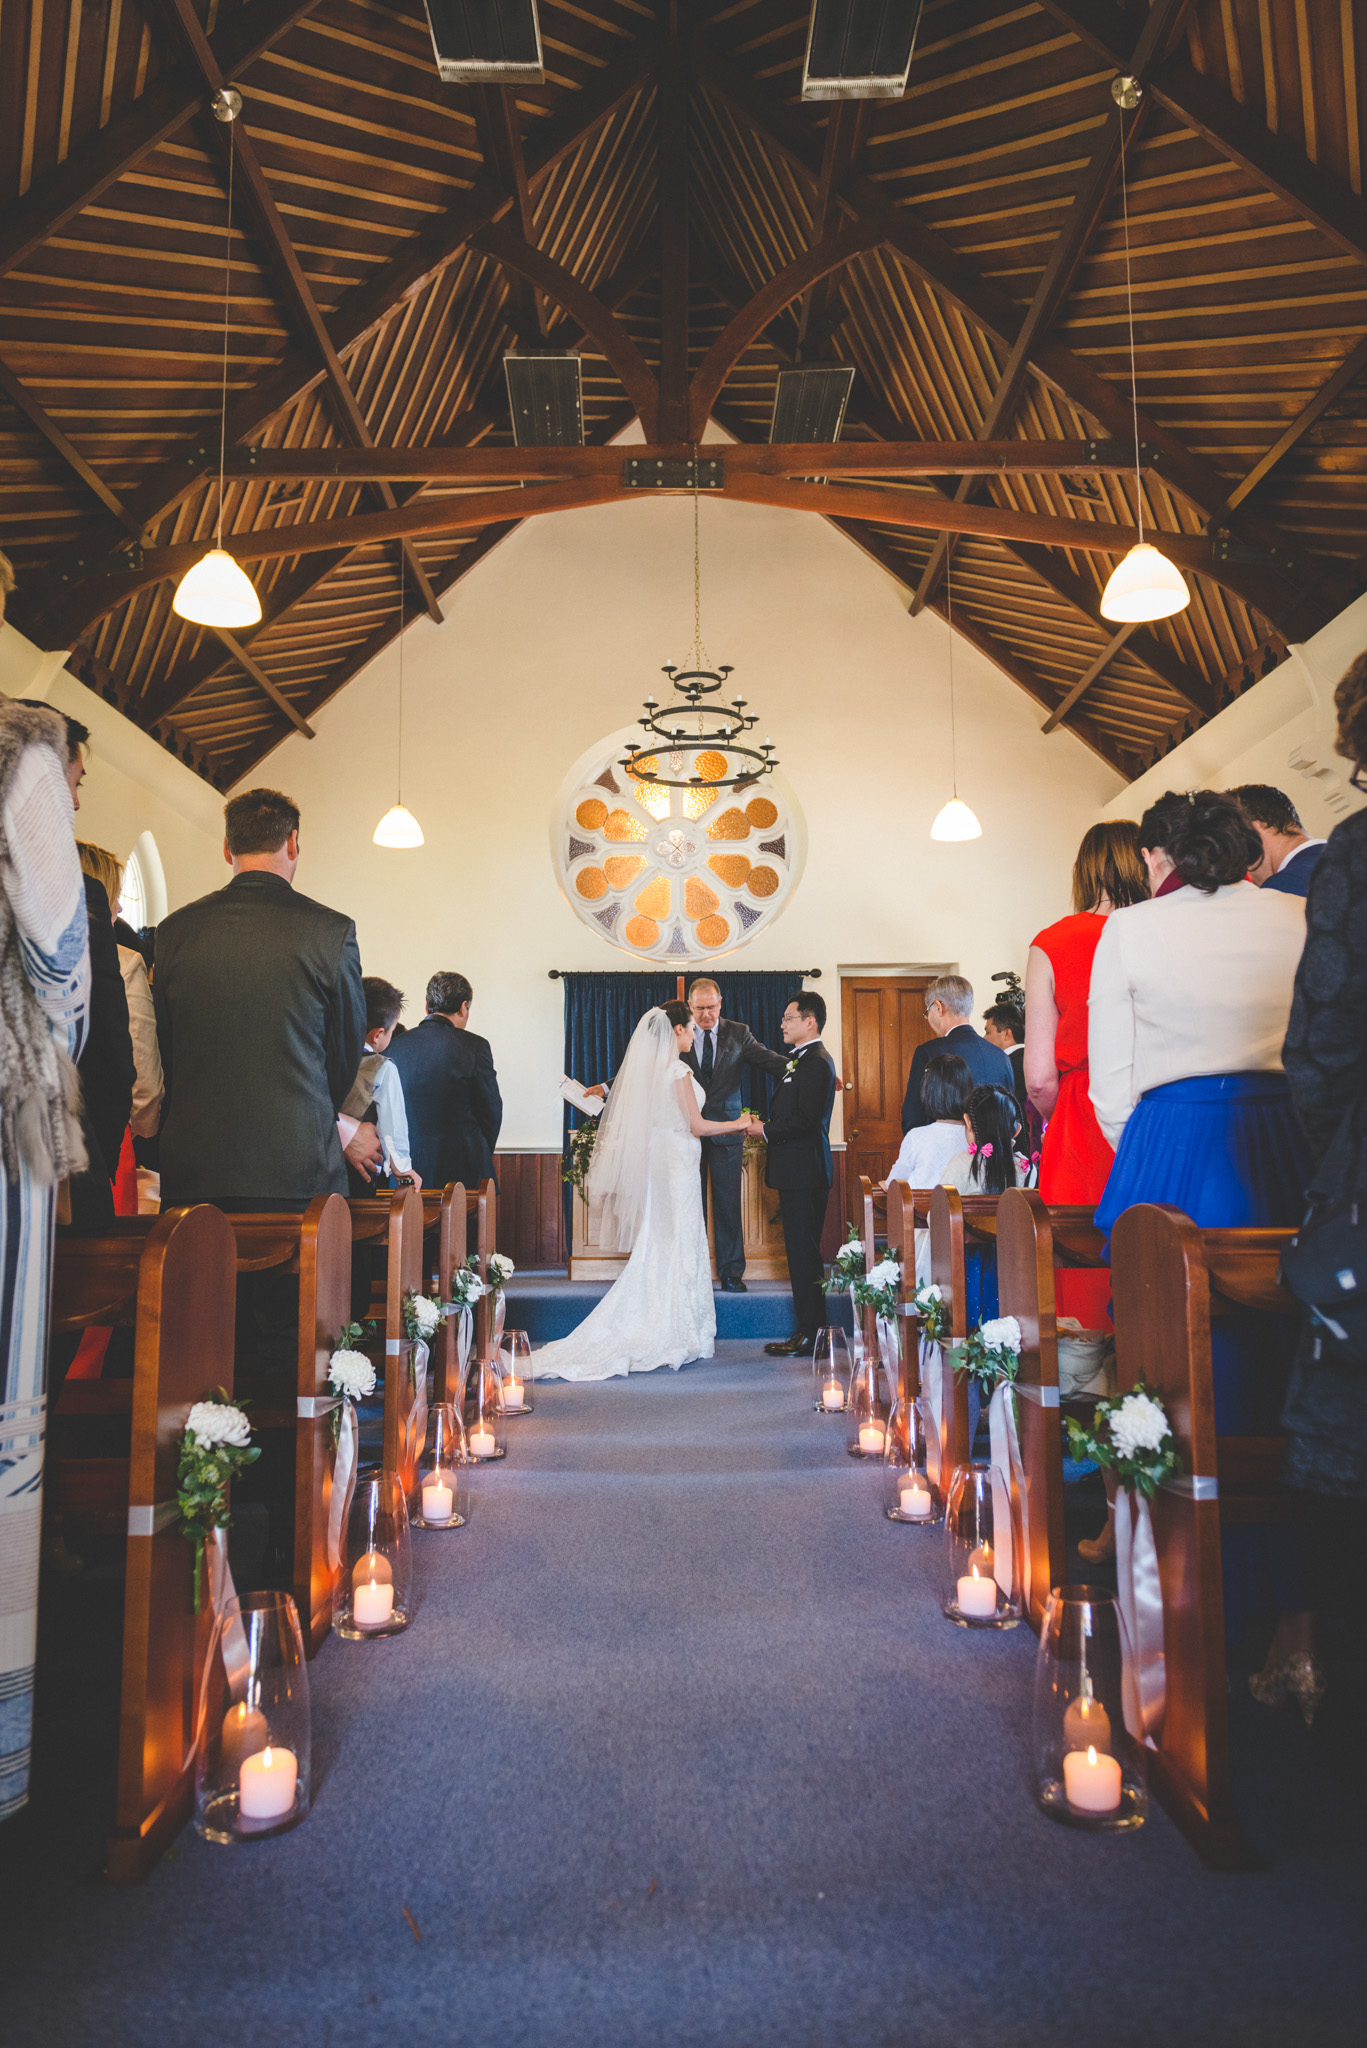 Church ceremony in Queenstown NZ